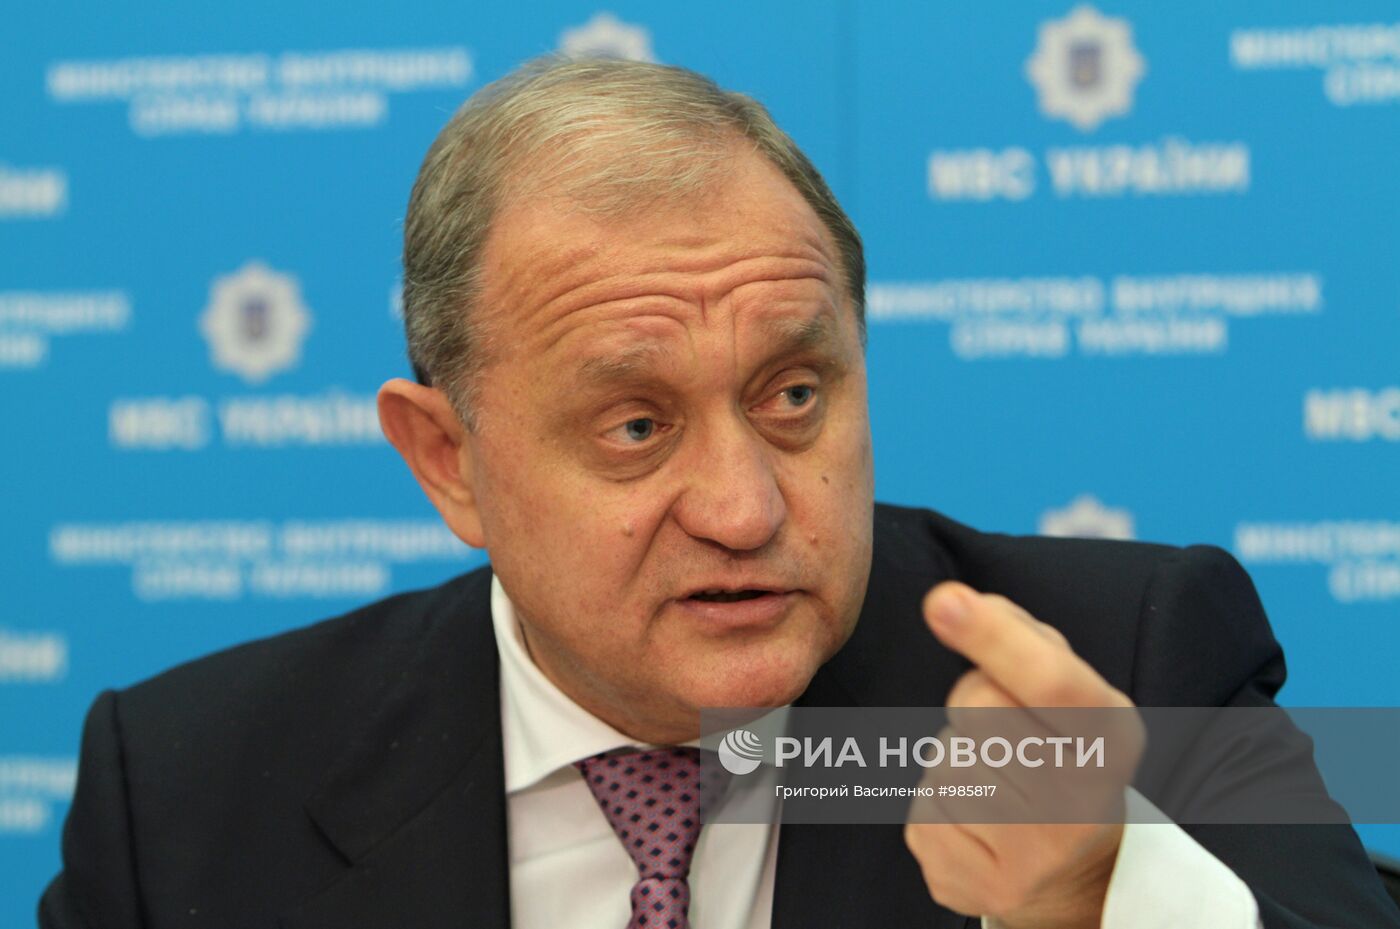 Председатель правительства Крыма Анатолий Могилев